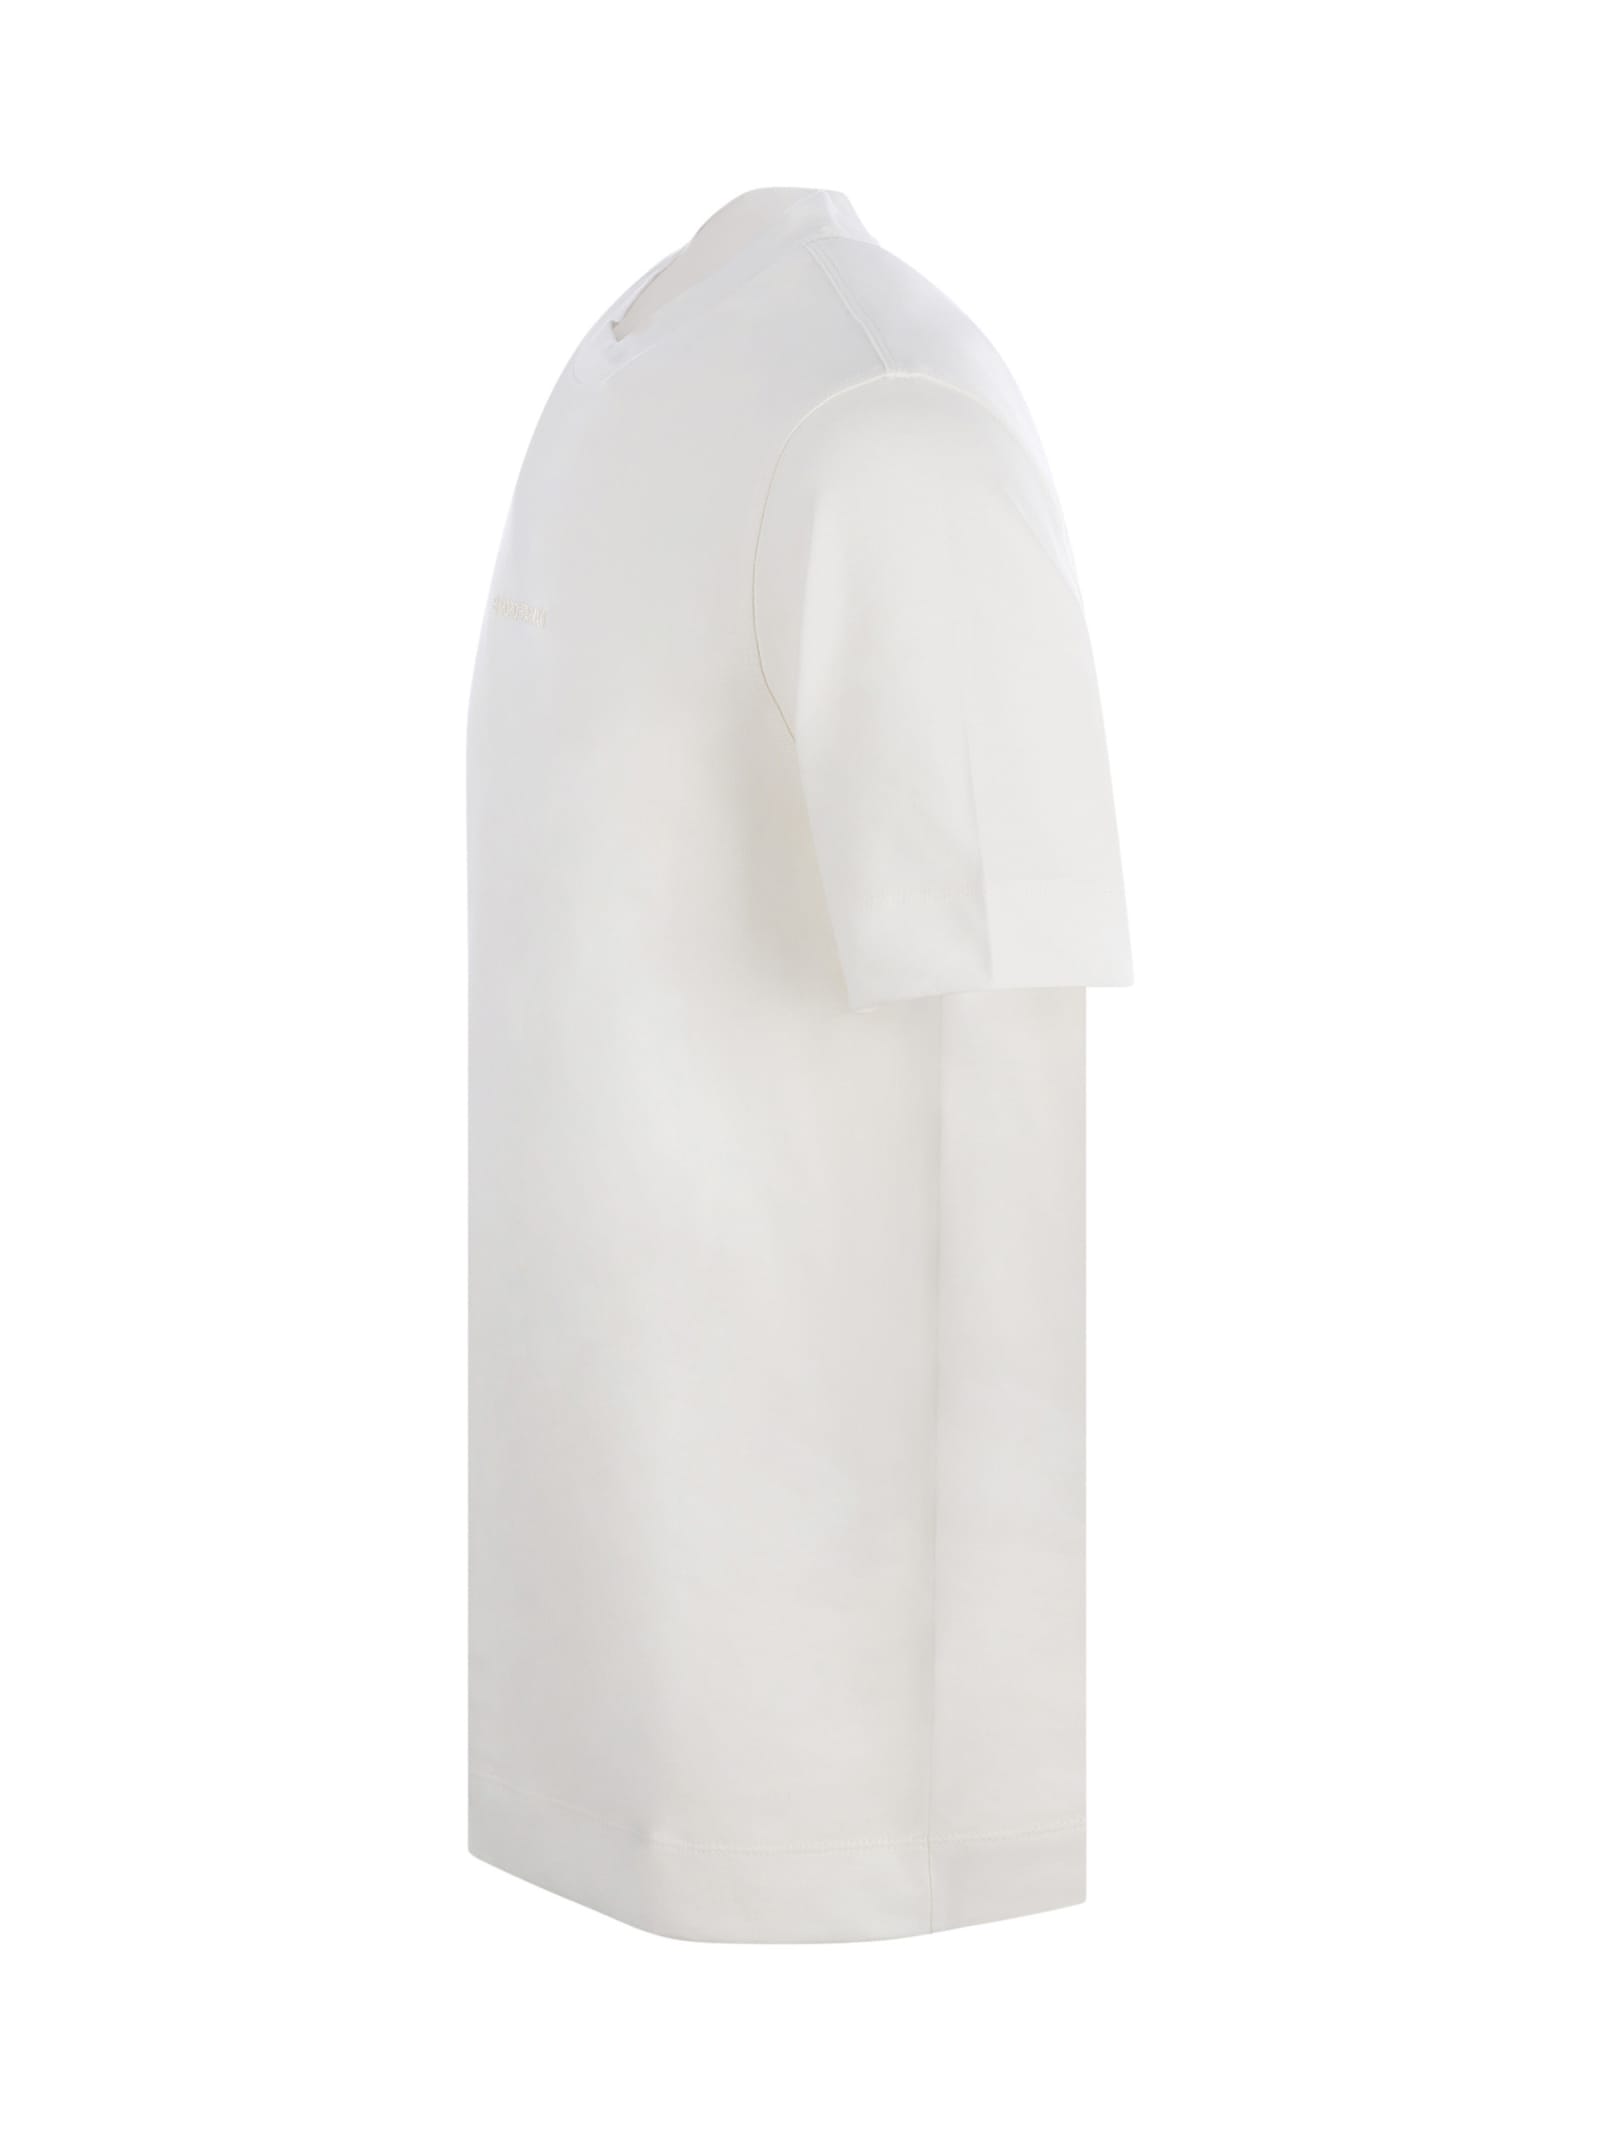 Emporio Armani T-shirt  In Bianco